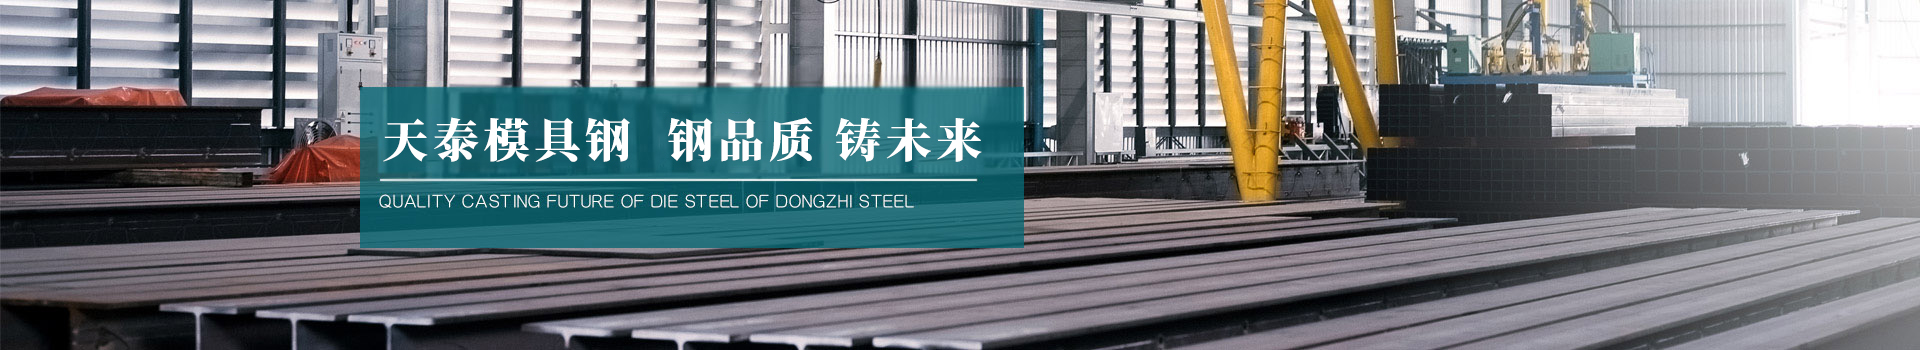 东之钢宅男视频APP在线钢 钢品质  铸未来